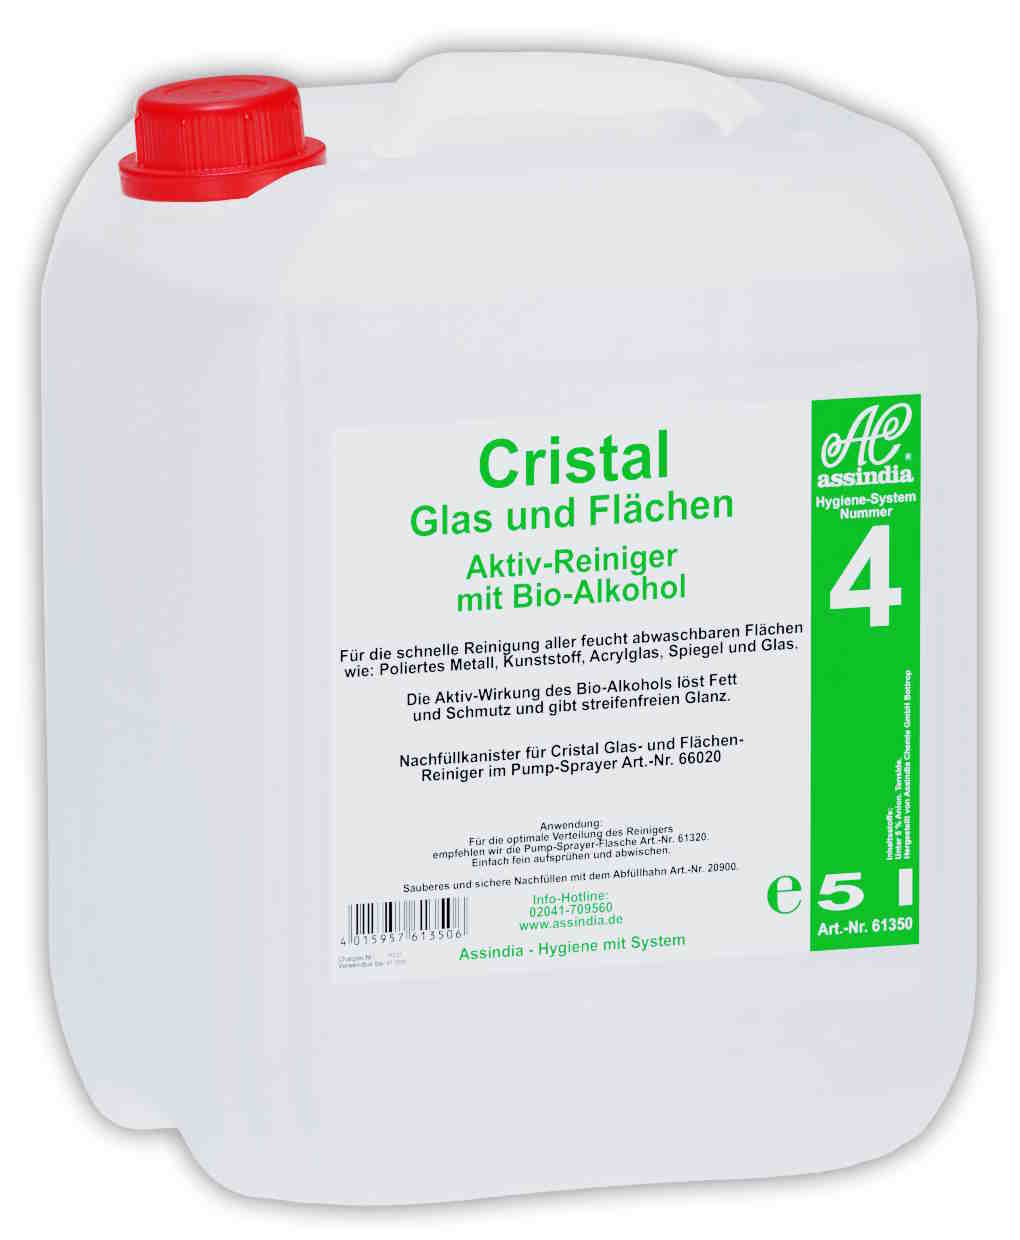 Cristal Glas und Flächen Reiniger 5 Liter Kanister